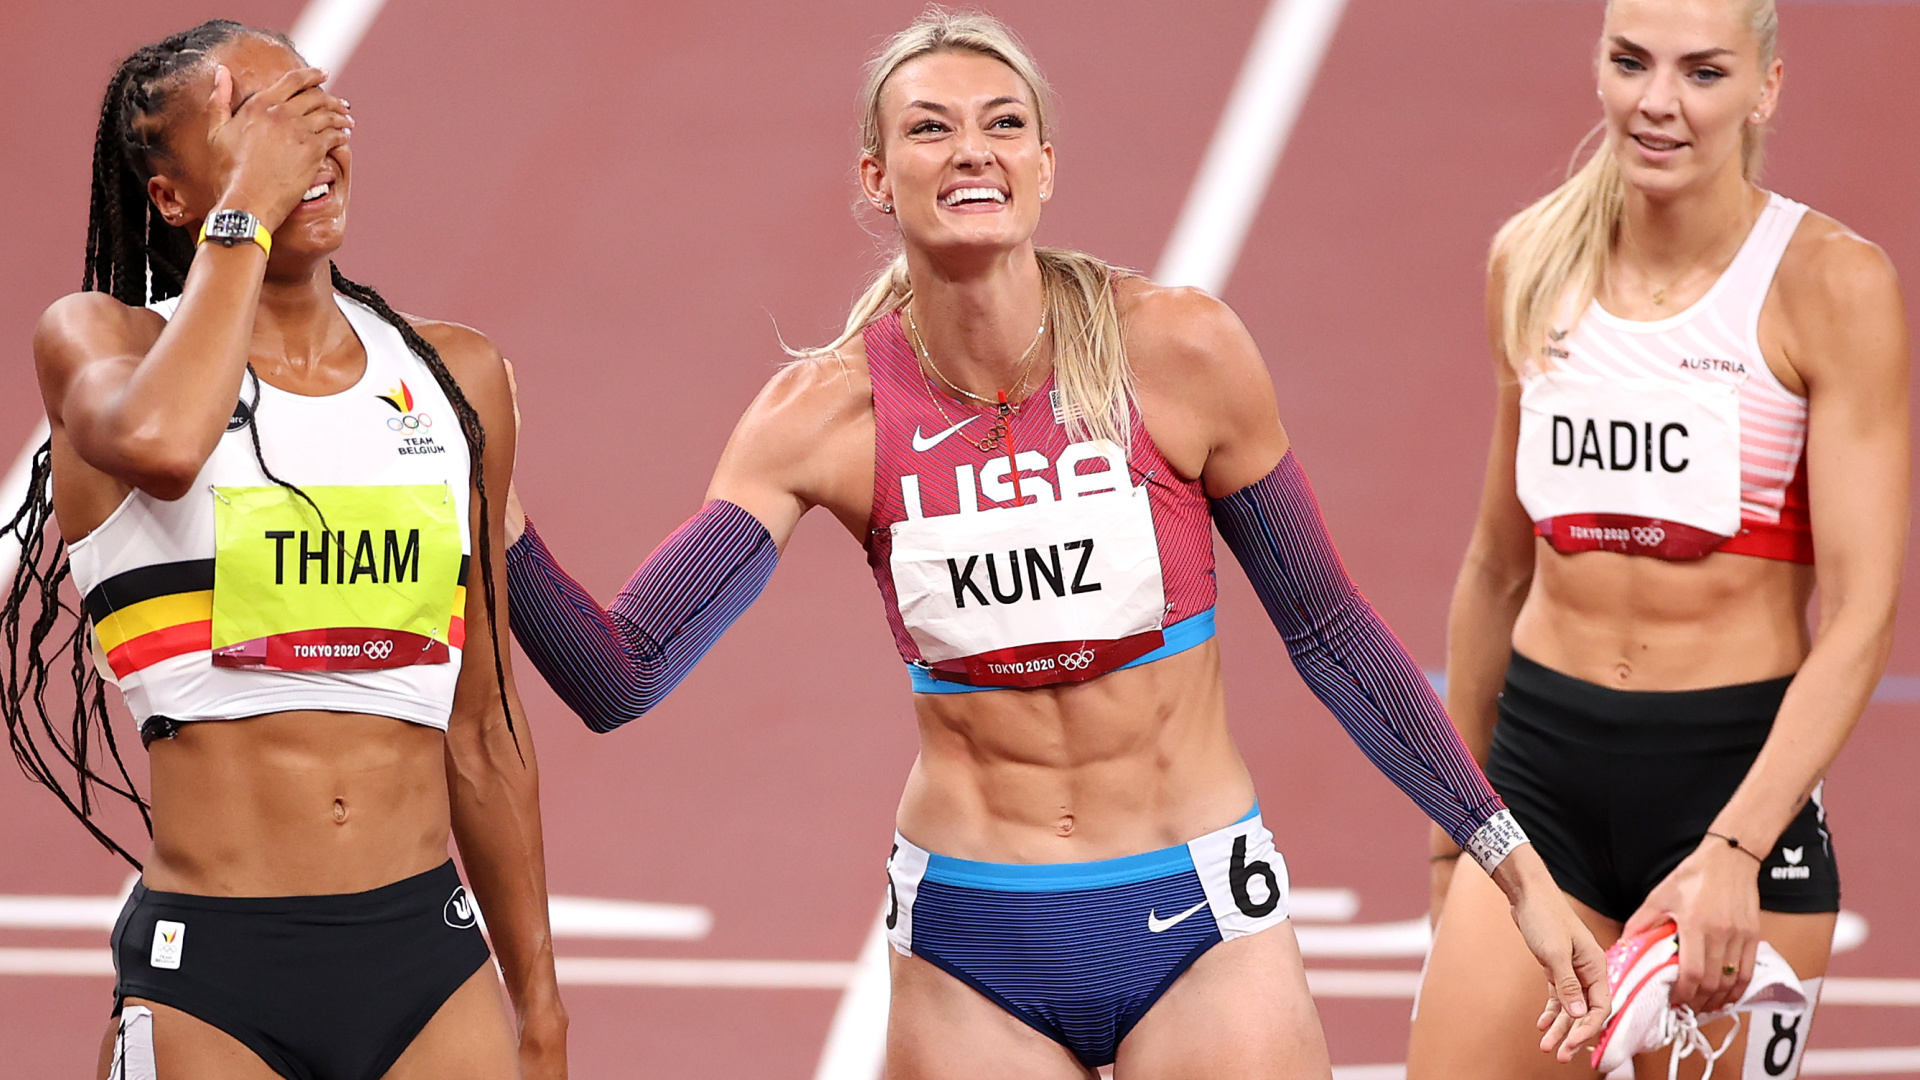 La atleta de acero que causa furor: por qué todos hablan de Annie Kunz